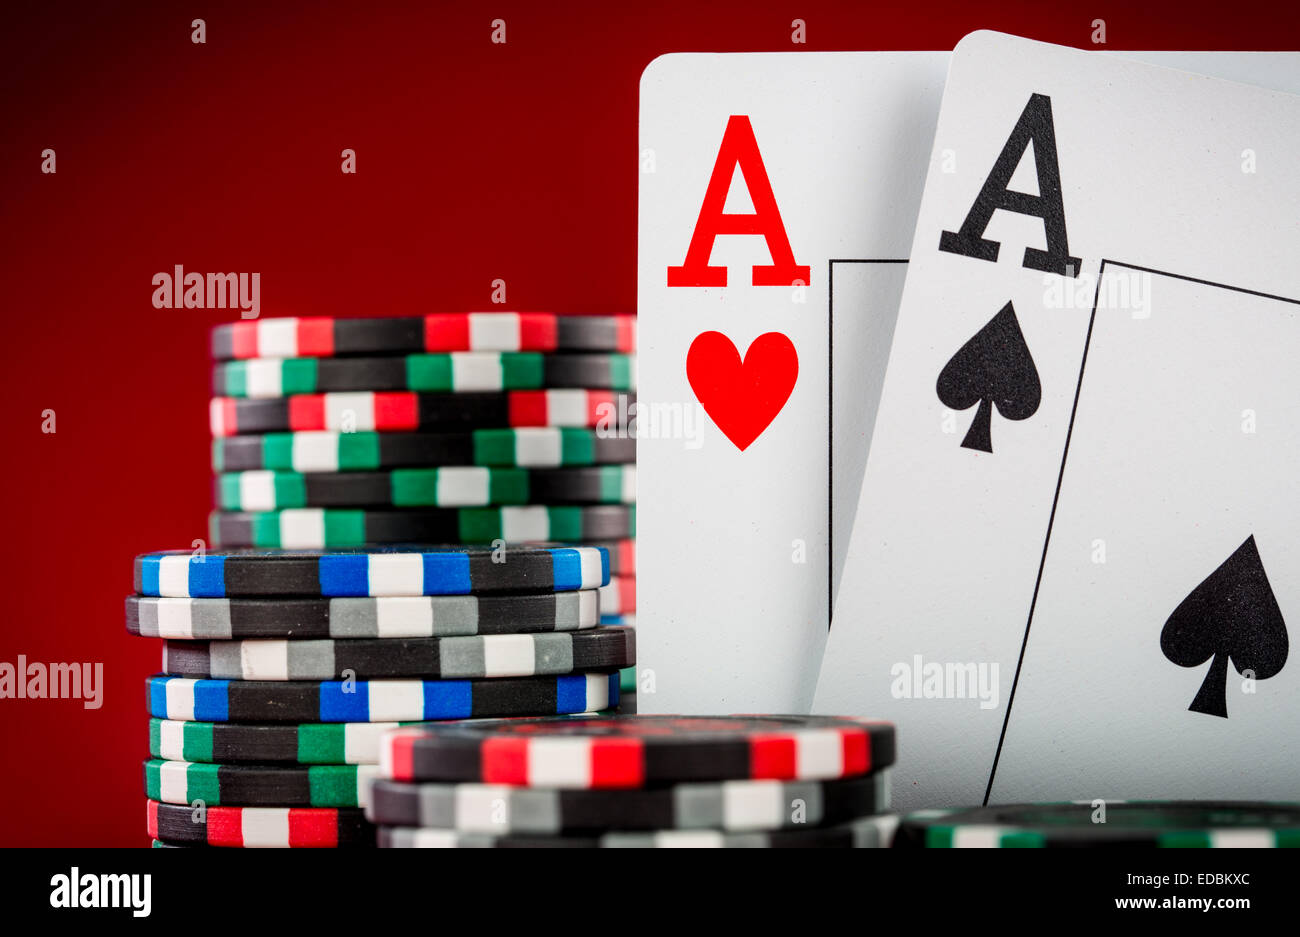 Stapel Chips und zwei Asse auf dem Tisch auf den roten Filz - Poker-Spiel-Konzept Stockfoto